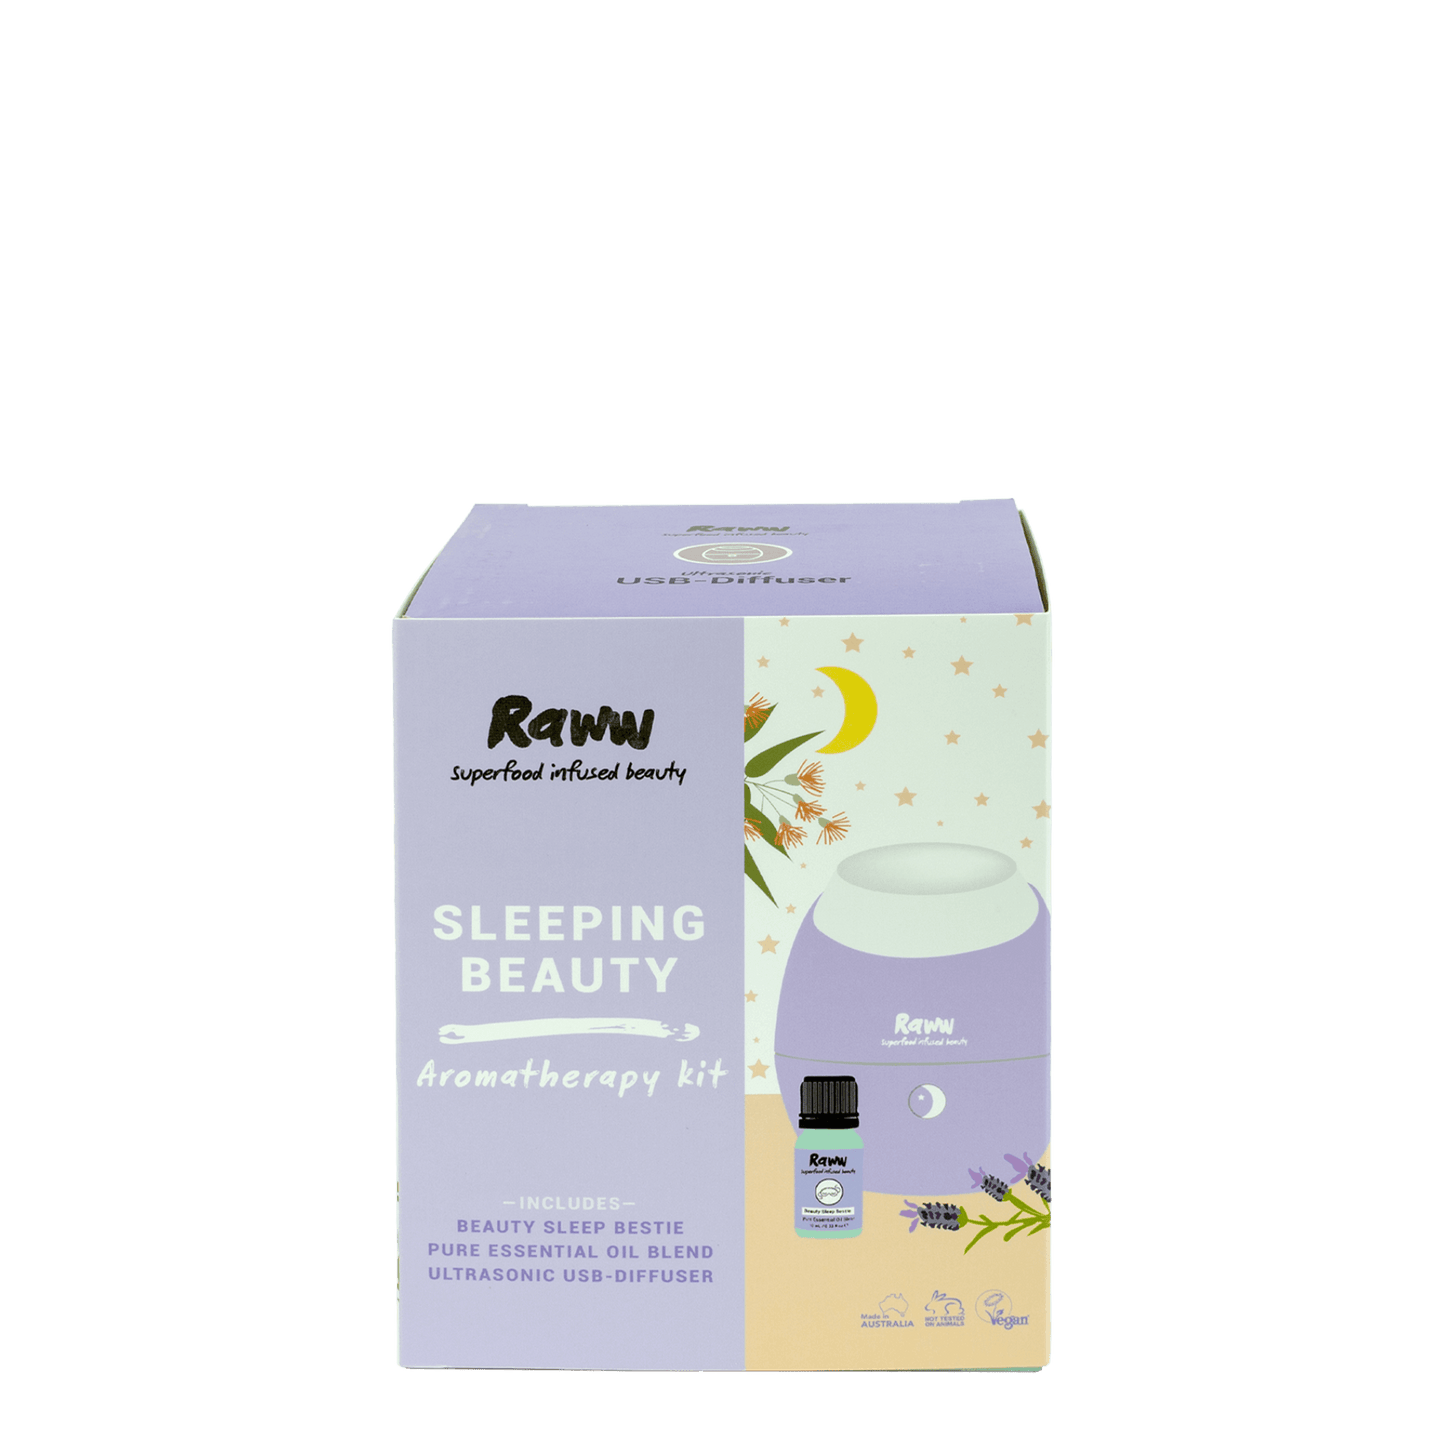 Sleeping Beauty Aromatherapy Kit | RAWW Cosmetics | 04